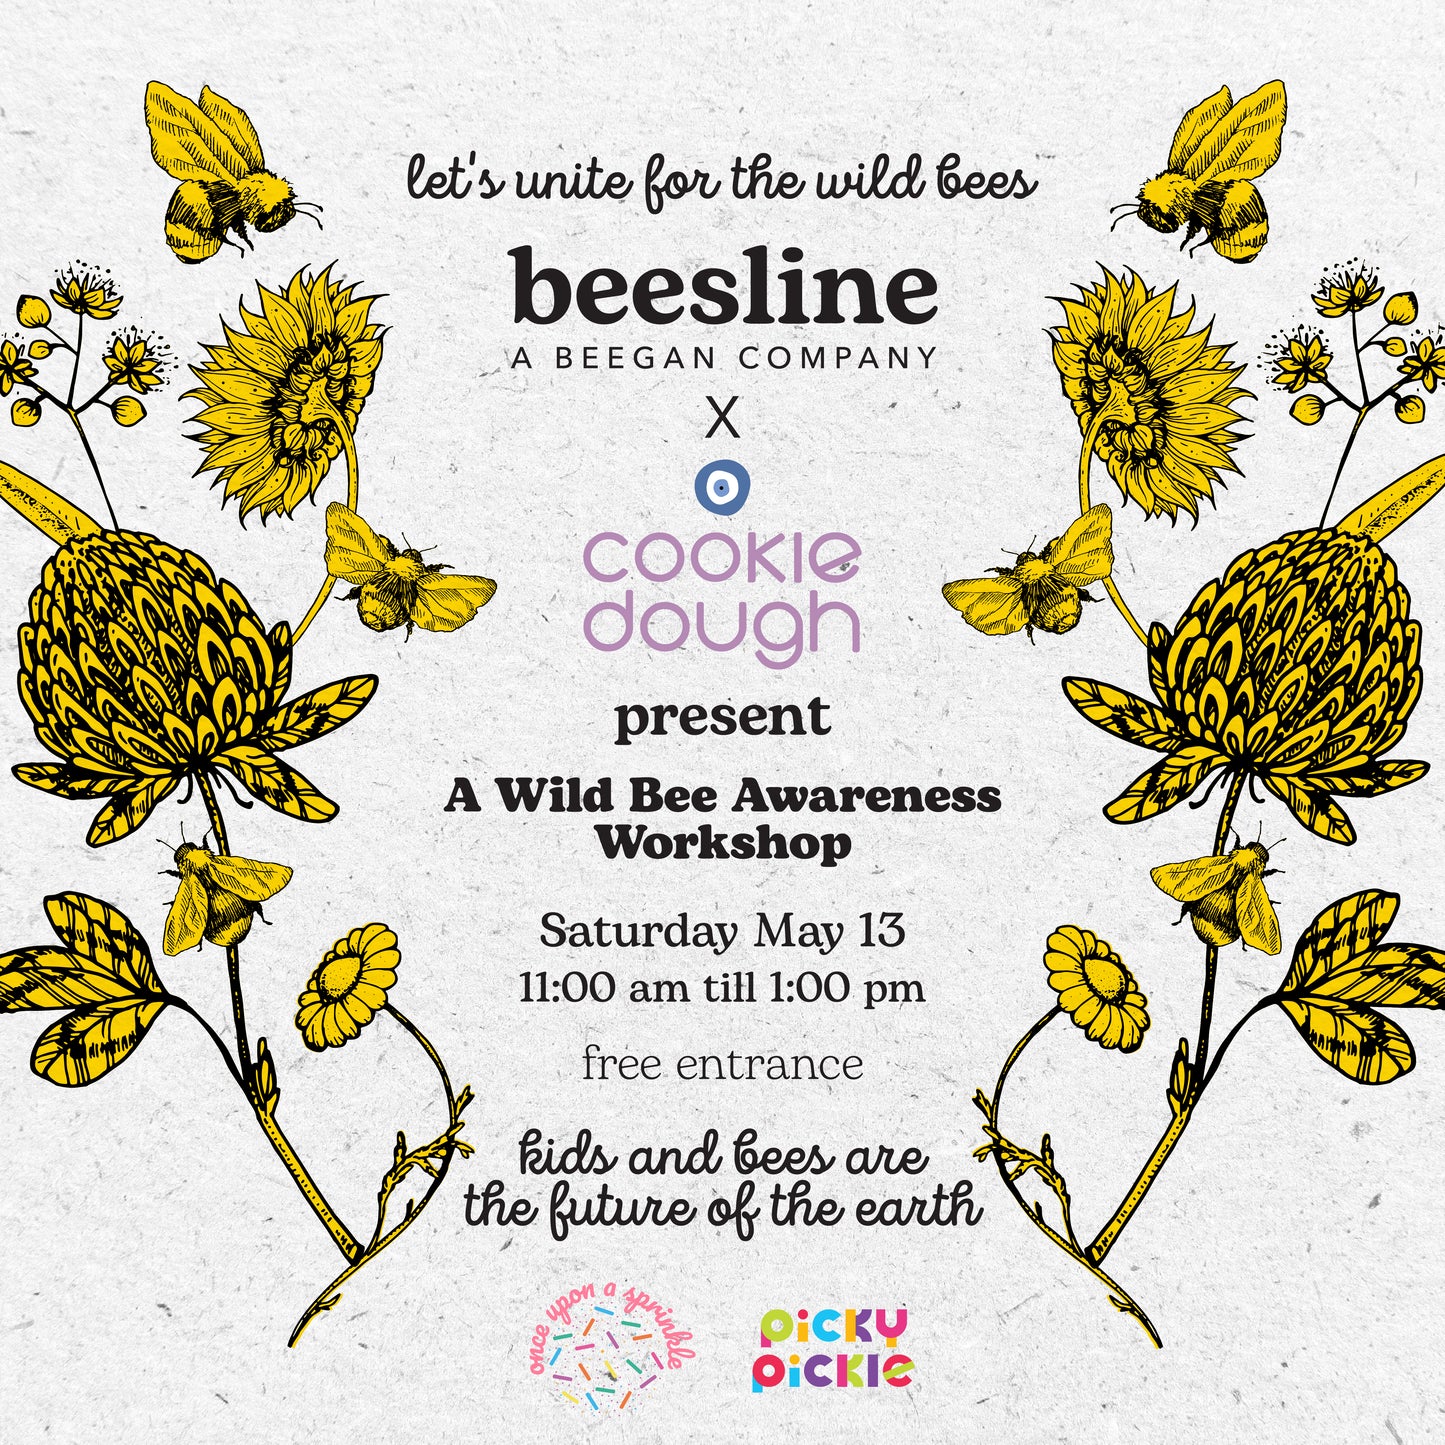 A Wild Bee Awareness Workshop